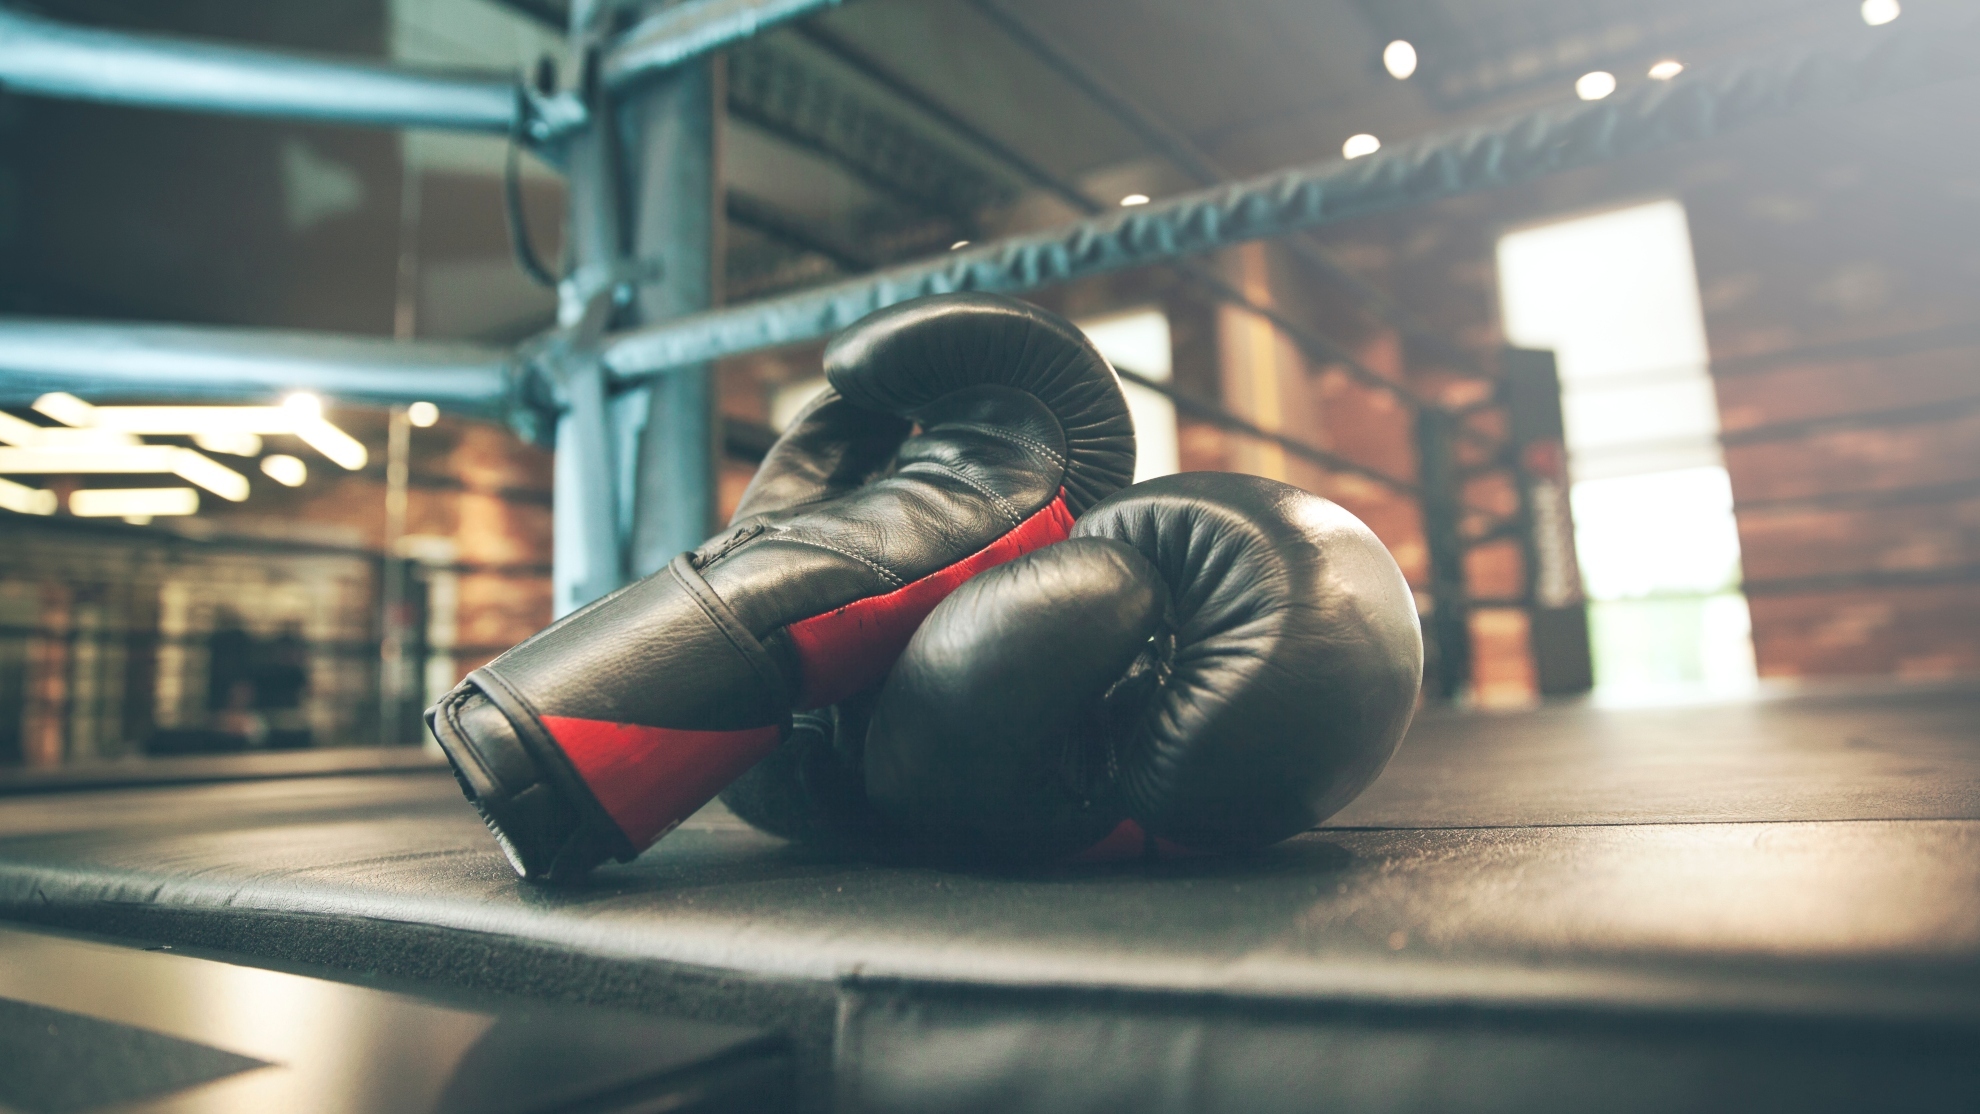 Boxing: Charlo vs. Castano